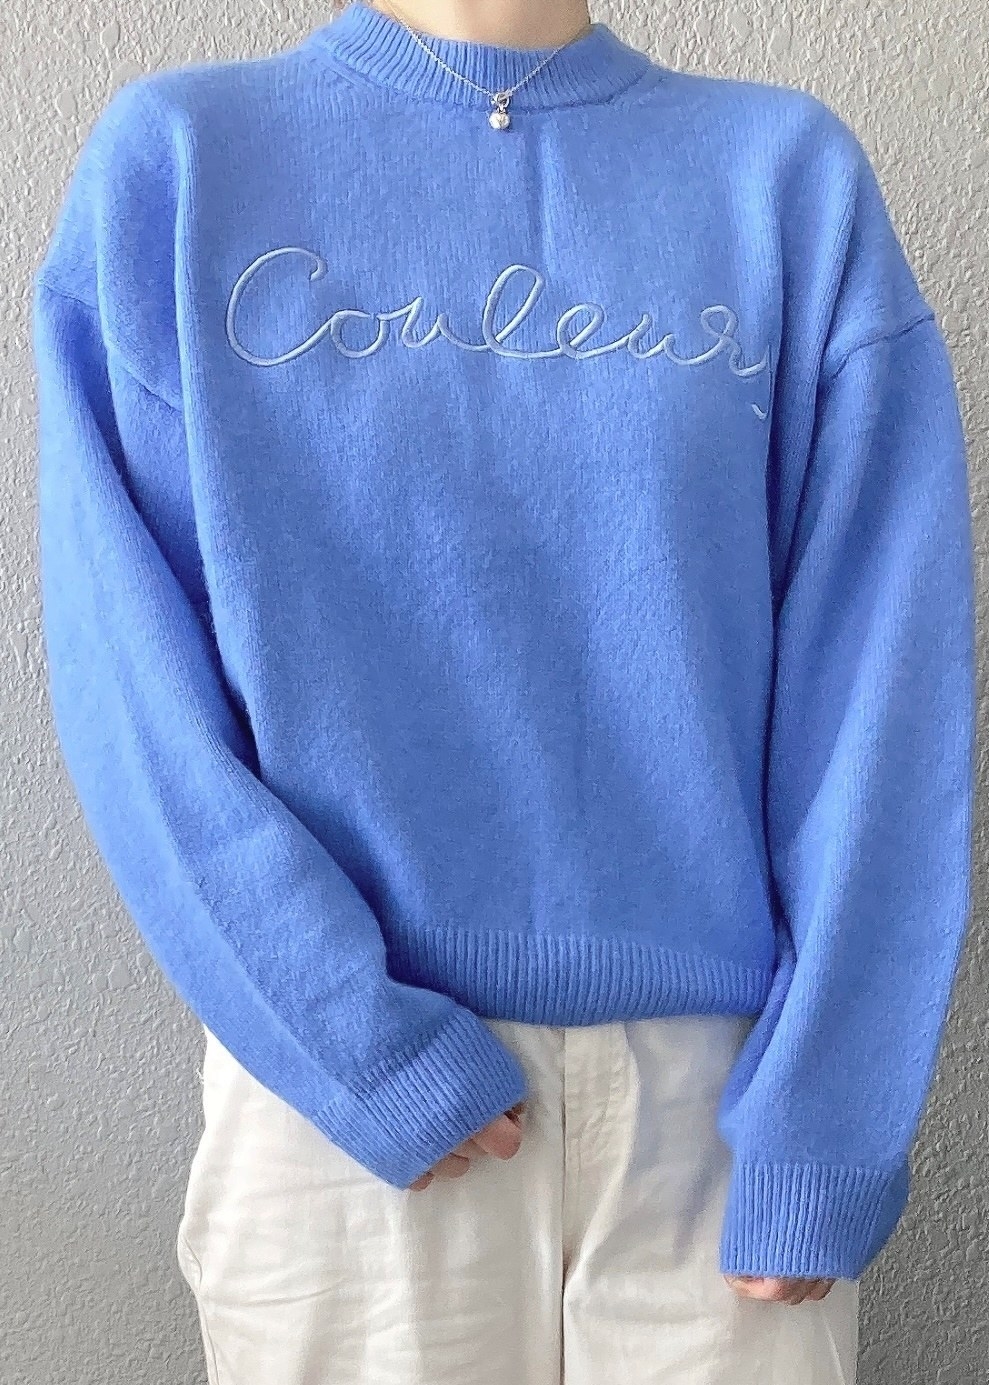 H＆Mのオススメのセーター「刺繍セーター」